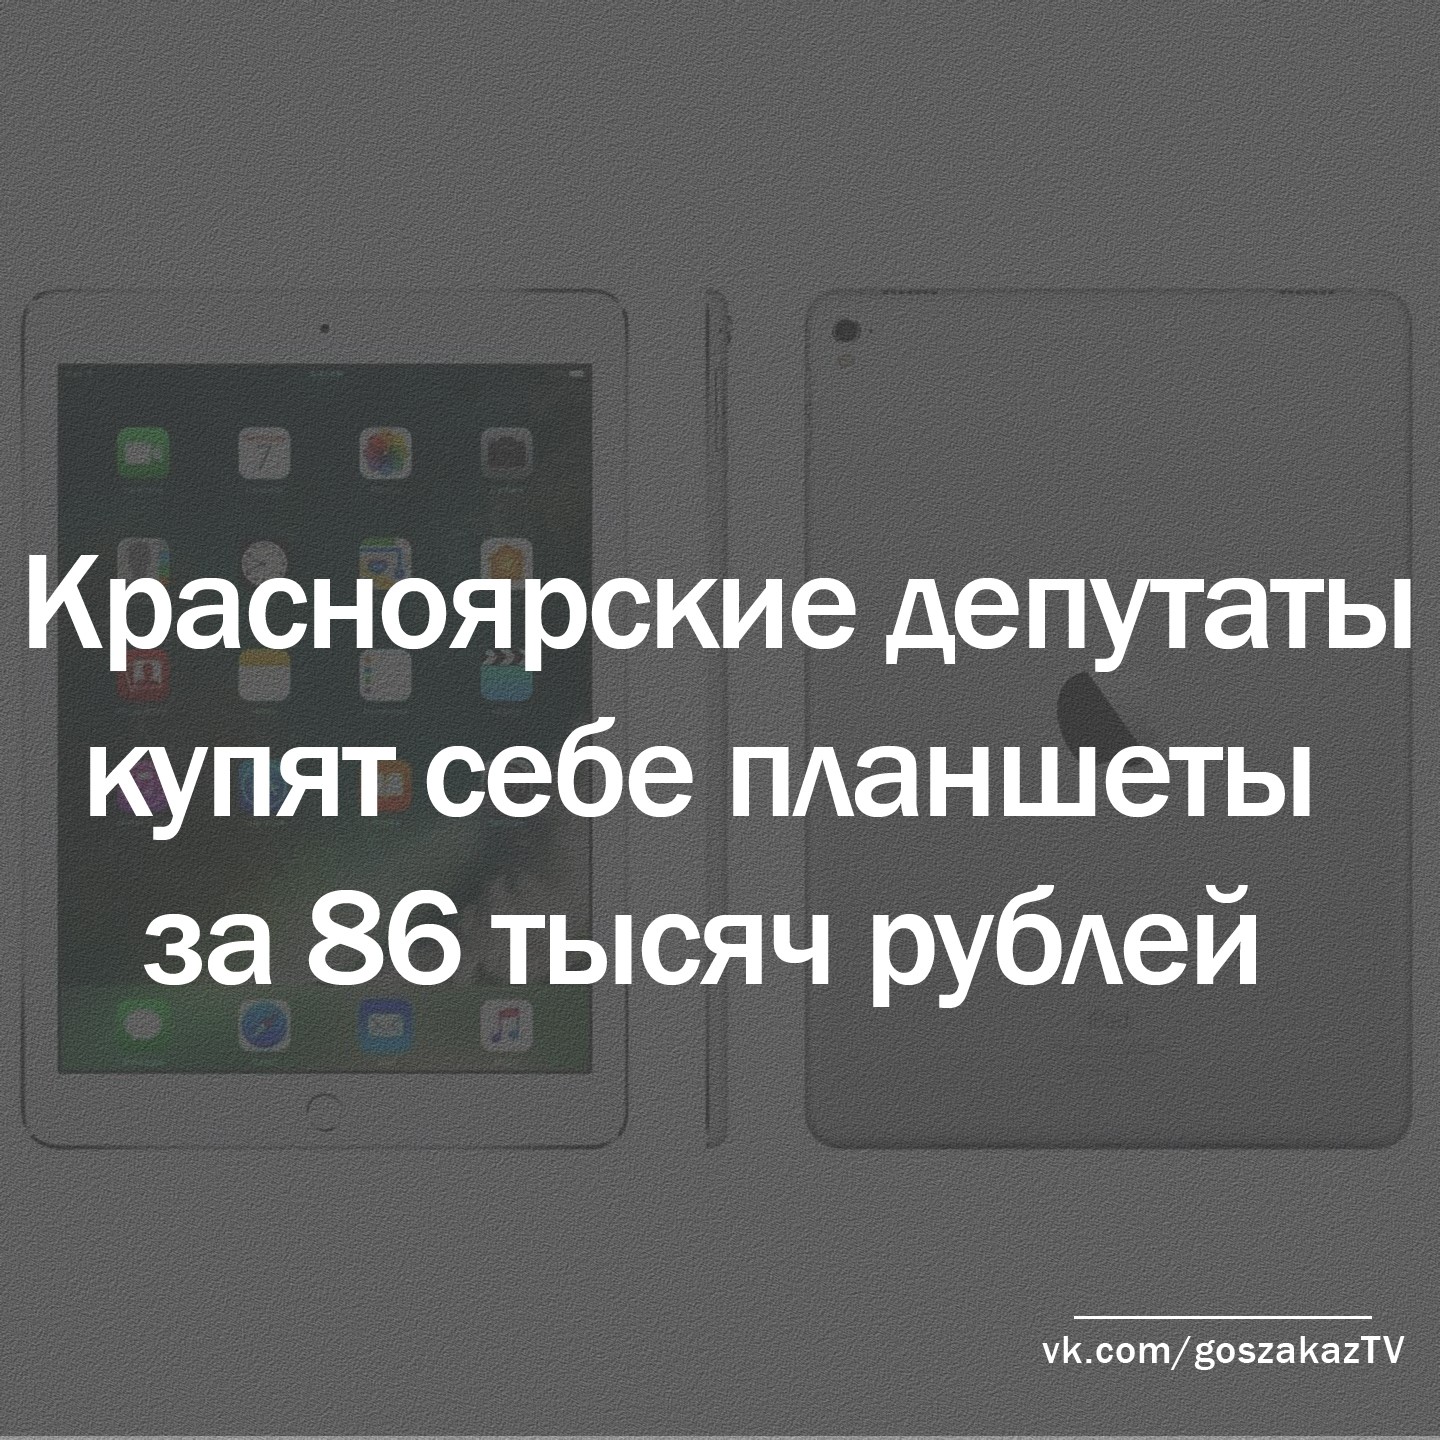 Для красноярских депутатов закупят планшеты ценой в 86 тысяч рублей